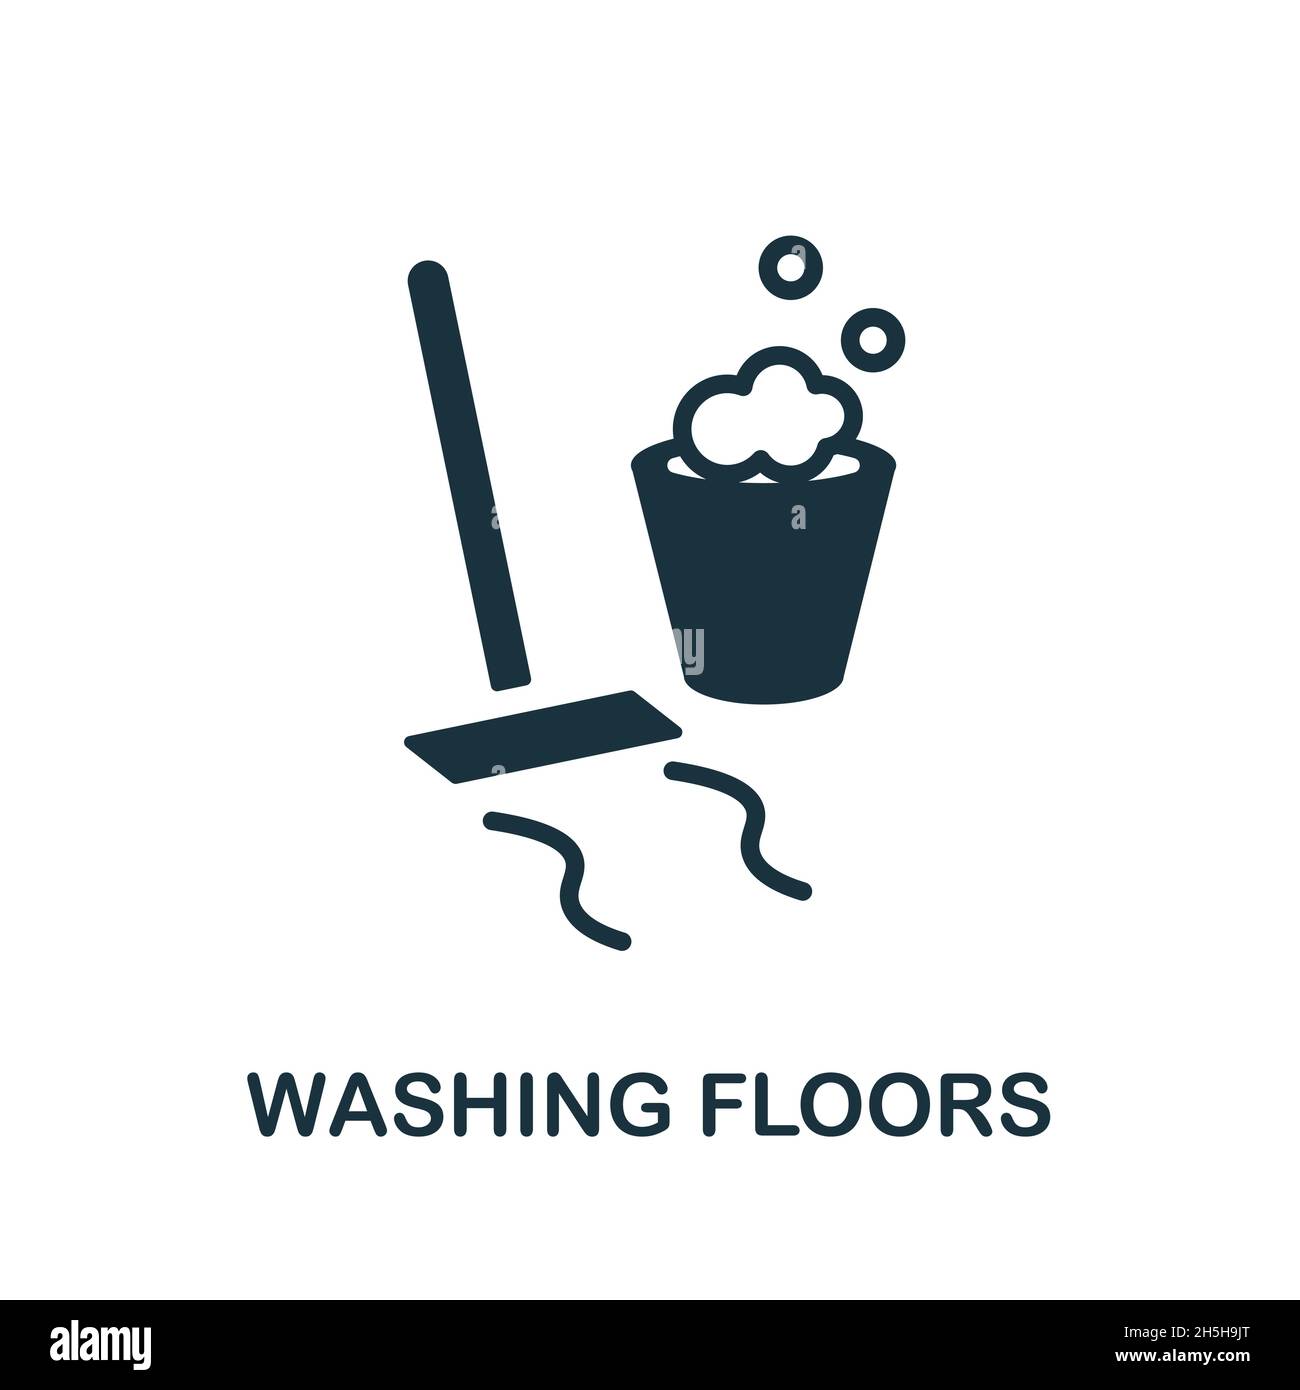 Symbol für Waschböden. Monochromes Schild aus der Reinigungssammlung. Creative Washfloors Icon Illustration für Webdesign, Infografiken und mehr Stock Vektor